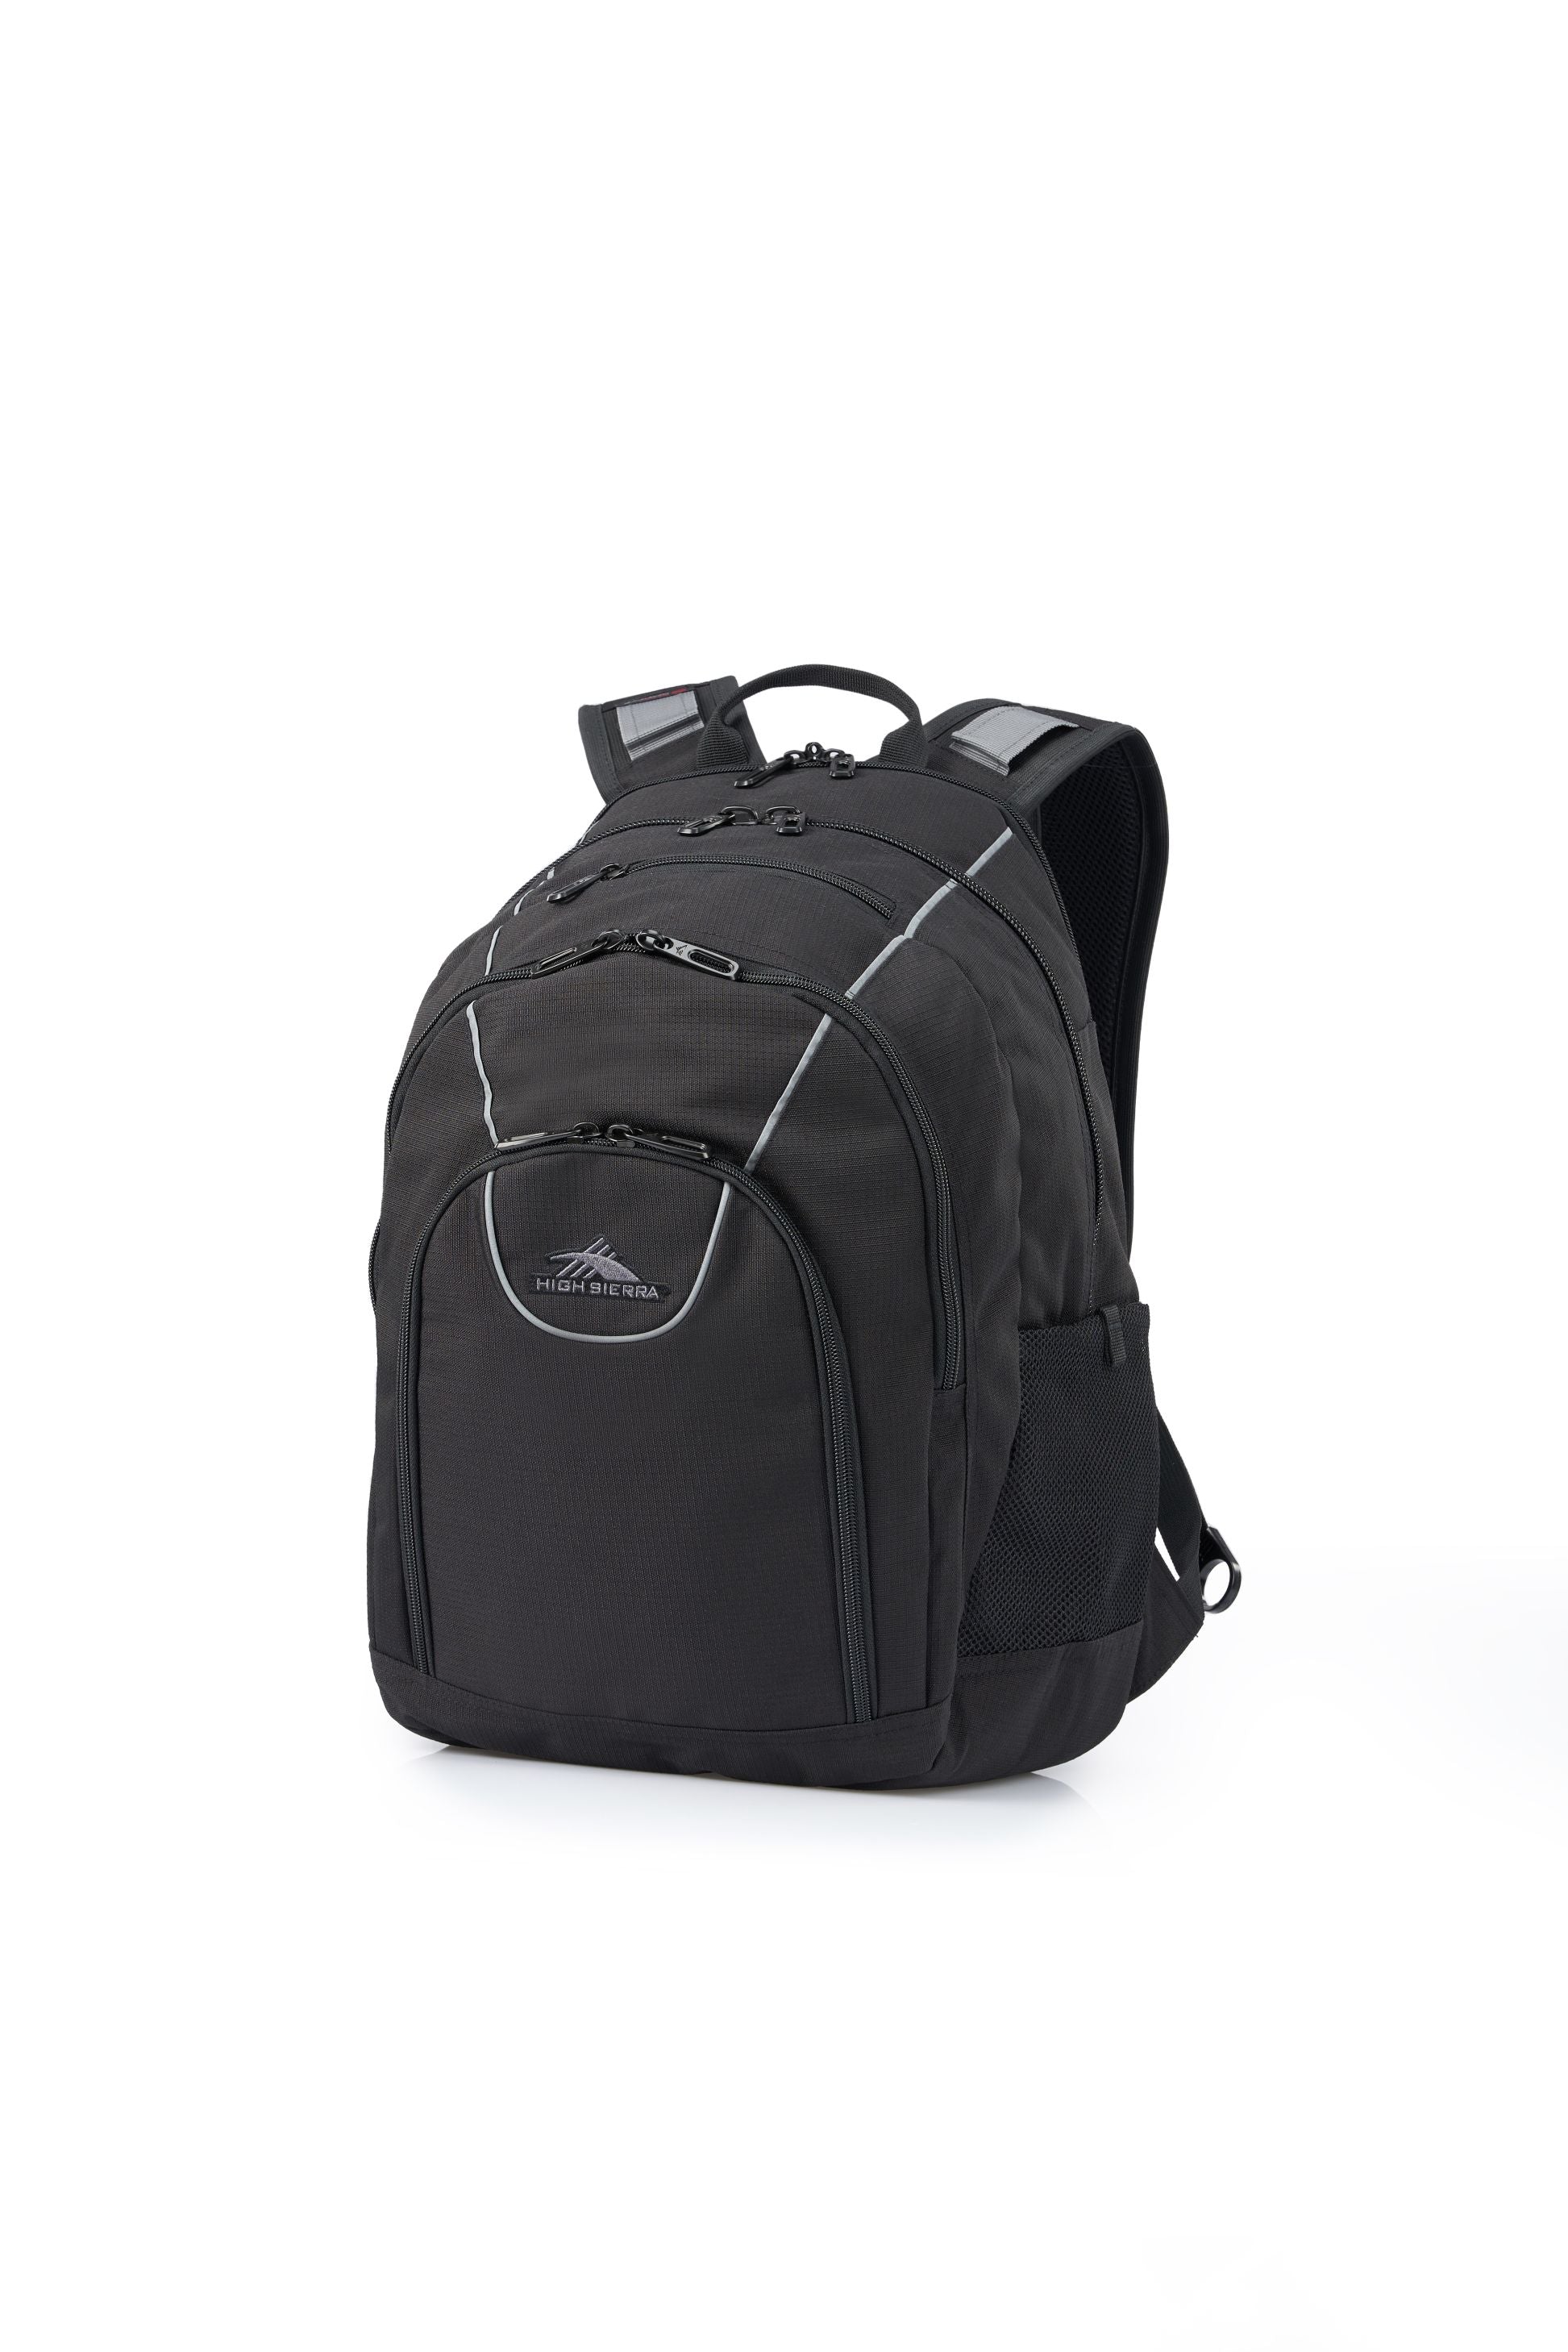 High Sierra - Academy 3.0 Backpack Eco - Black-2